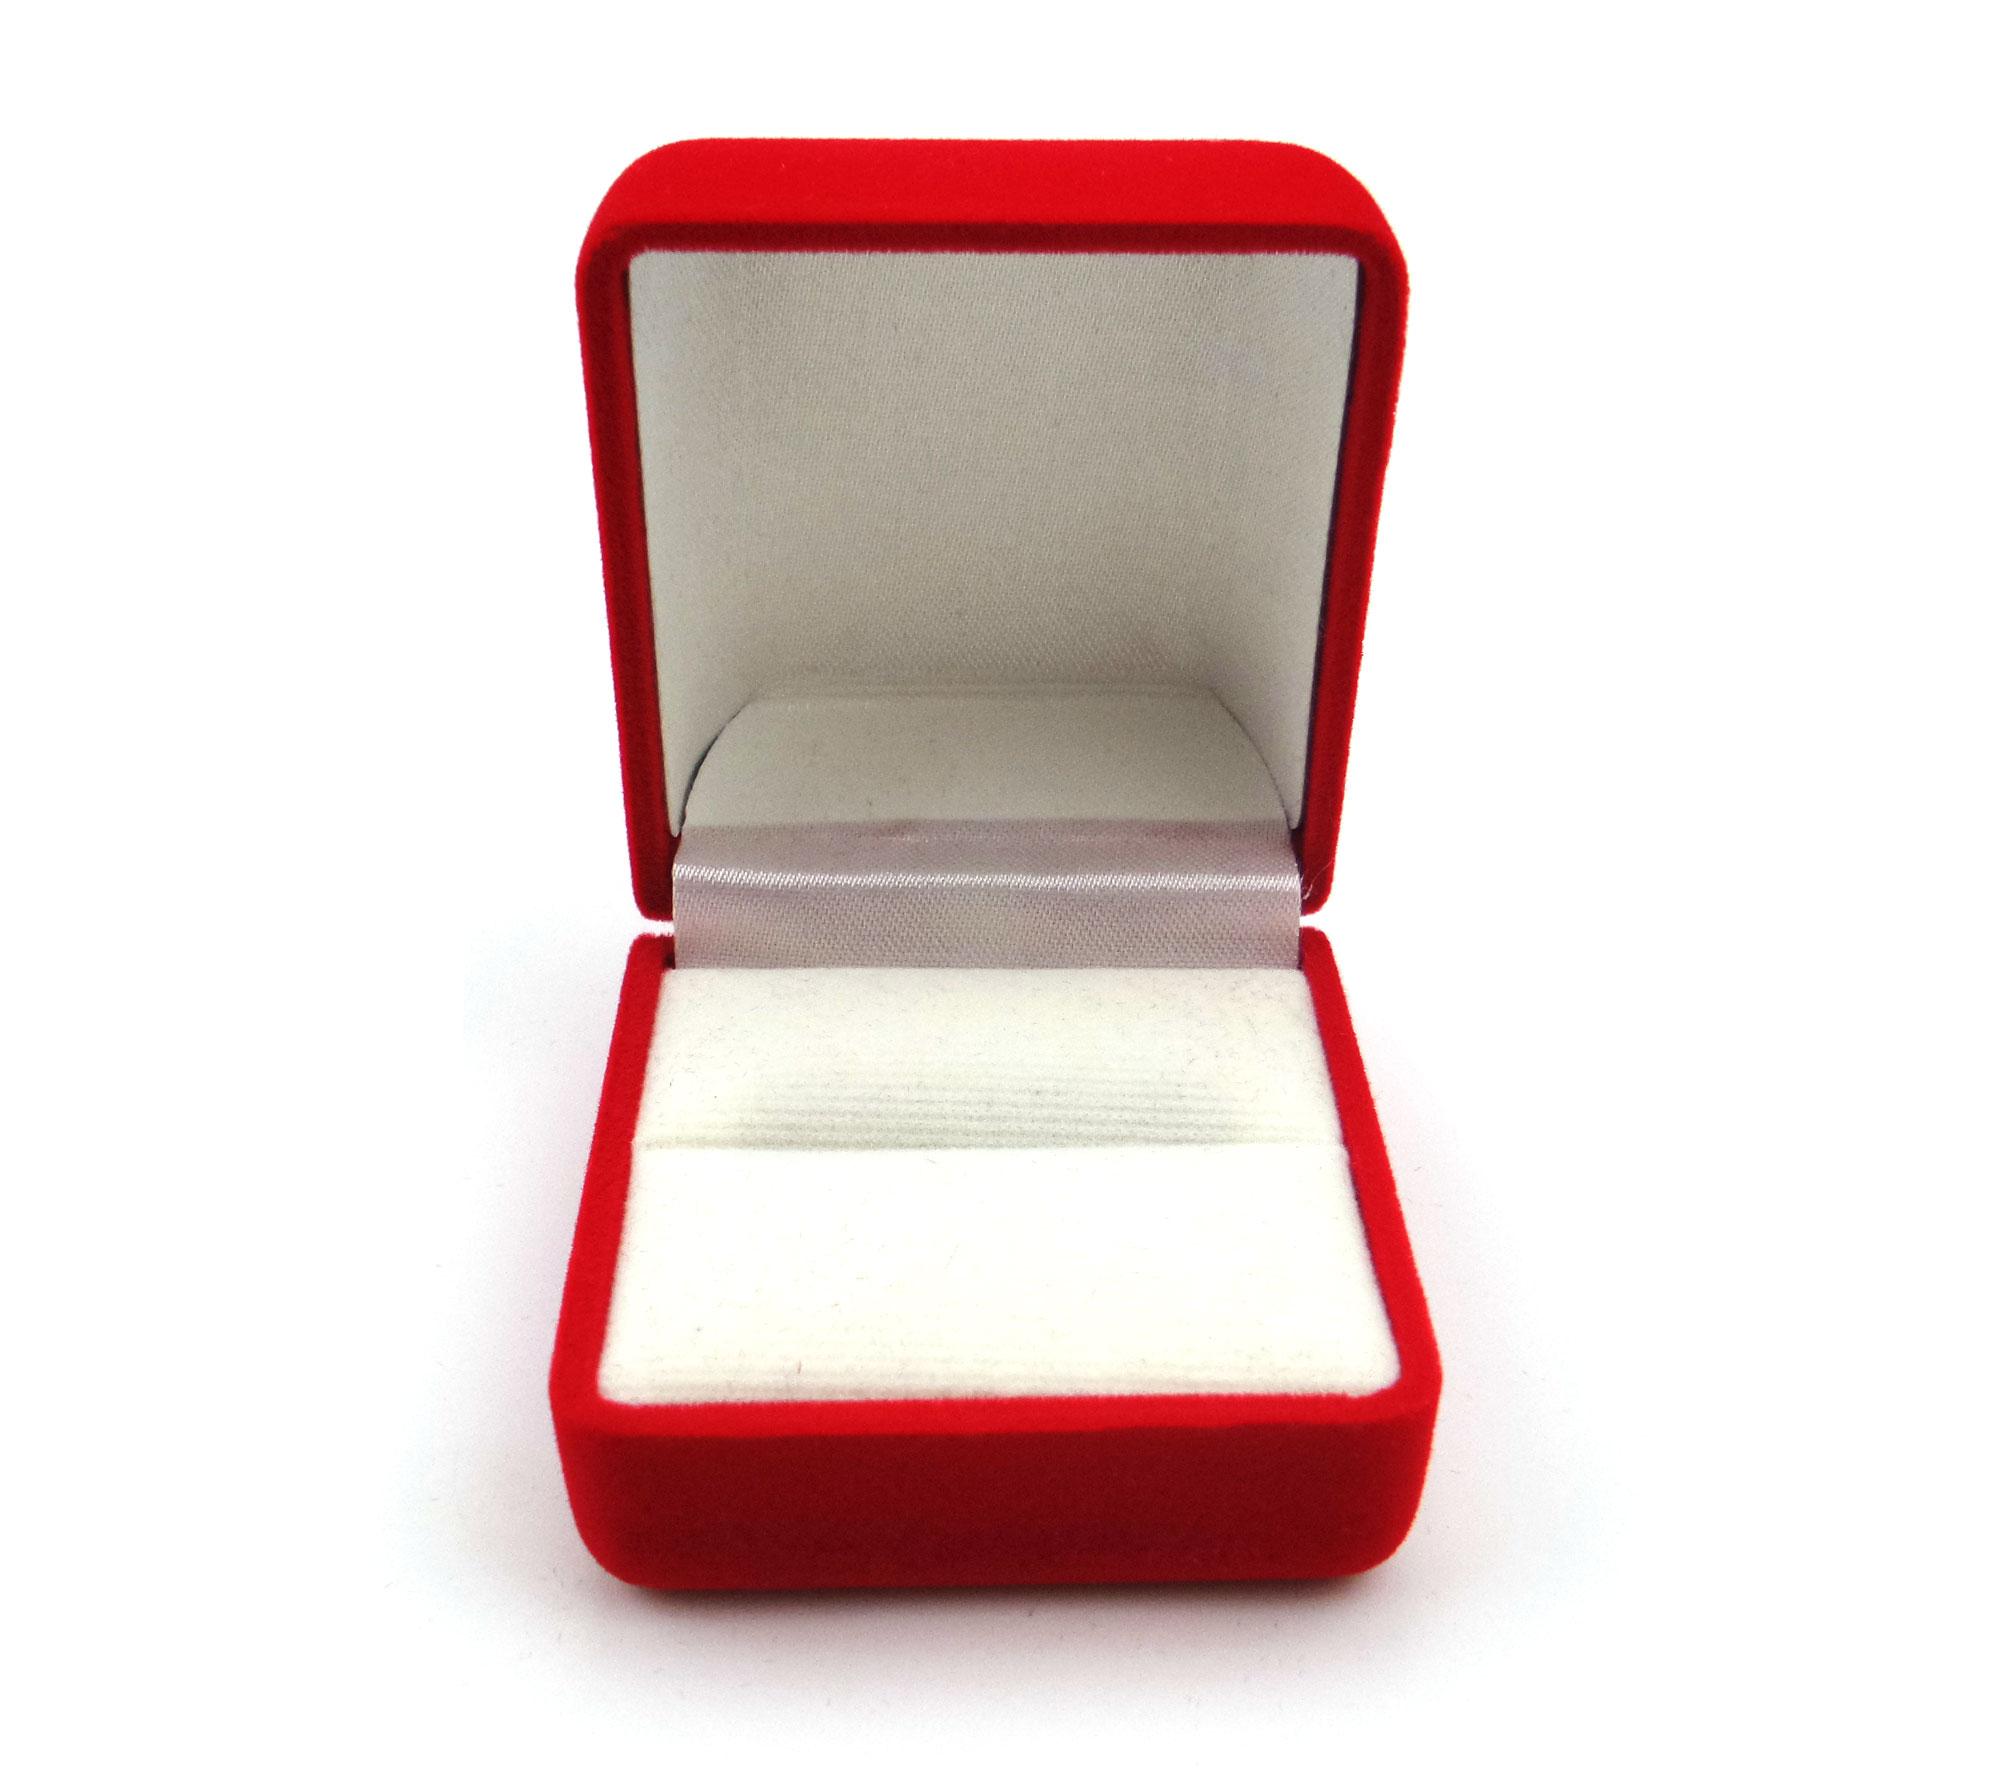 PY Beauty ขายกล่องใส่แหวนกำมะหยี่ ทรงสี่เลี่ยม สีแดงพื้นขาว จำนวน 1 ชิ้น ไว้ใช้เก็บแหวนสวยๆกันนะคะ